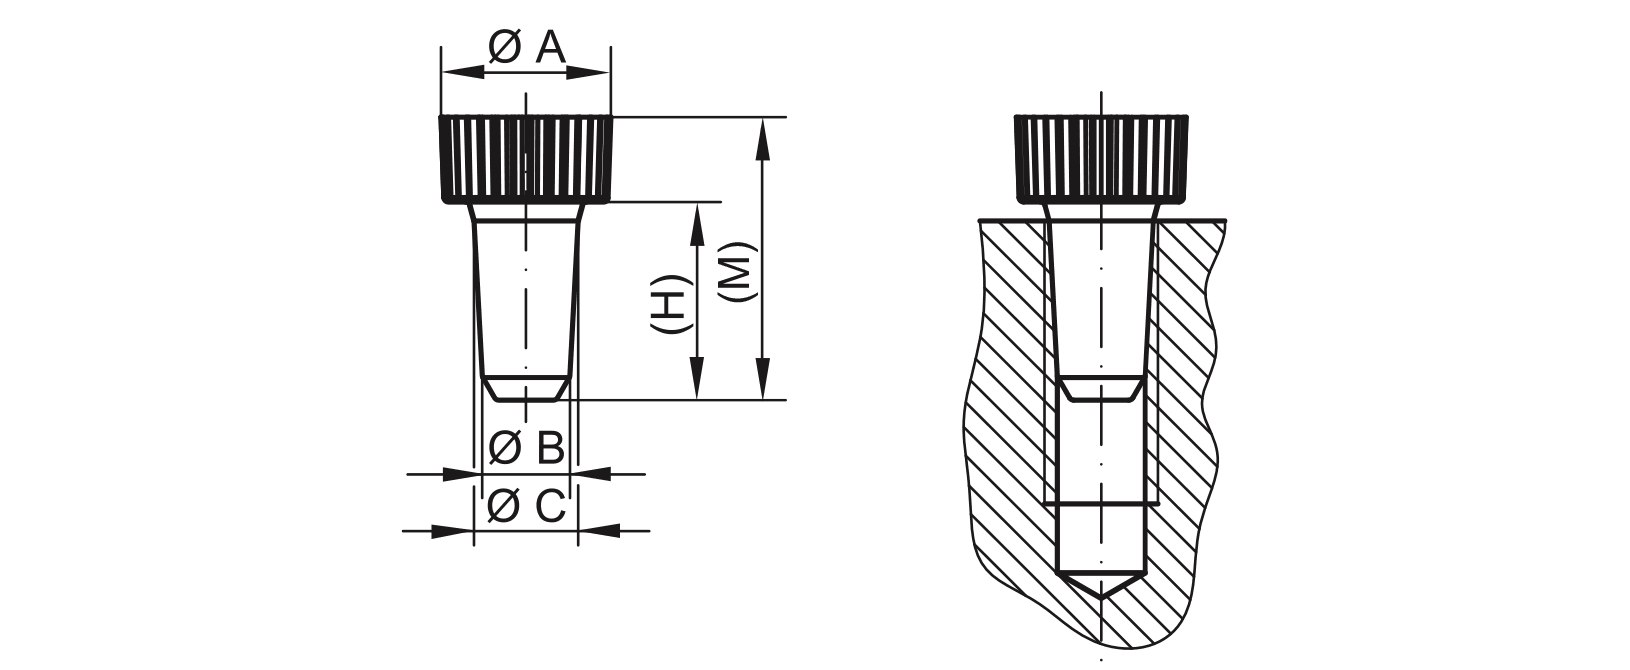 Elementos de inserción de dibujo - GPN 550